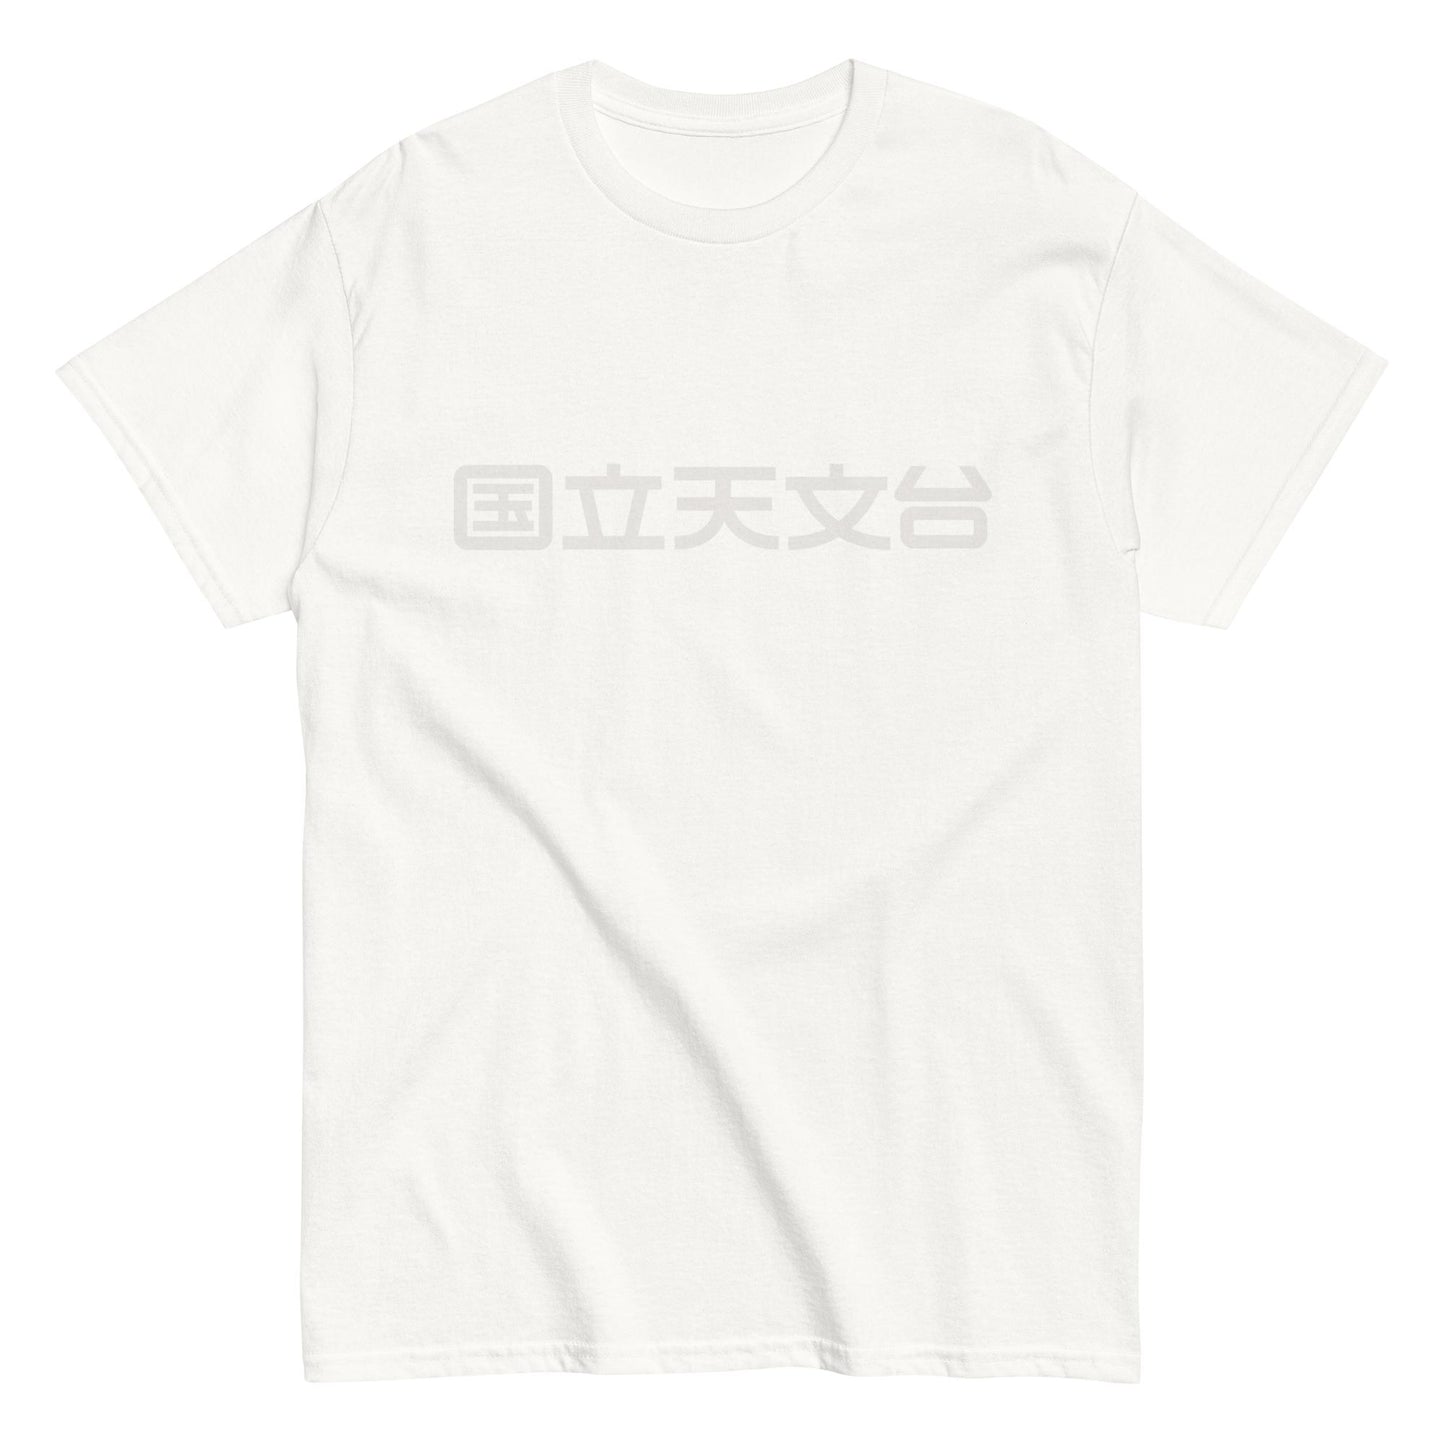 国立天文台 NAOJ漢字 ロゴマーク ヘビーウェイト Tシャツ ホワイト x ホワイト S 00